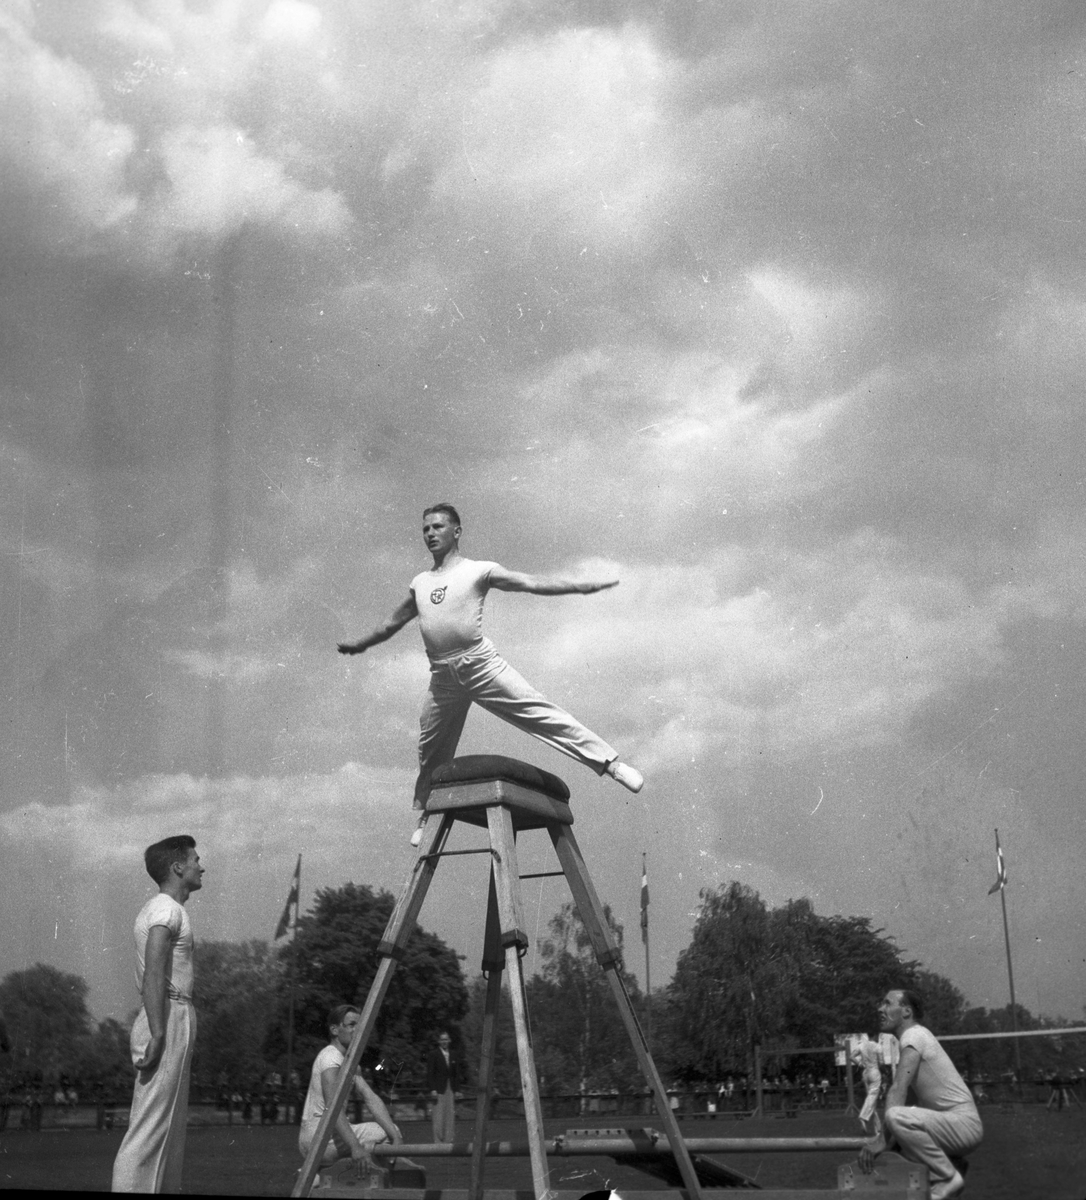 Gymnastik på Strömvallen.

En man hoppar över en bock.

3 juni 1943.